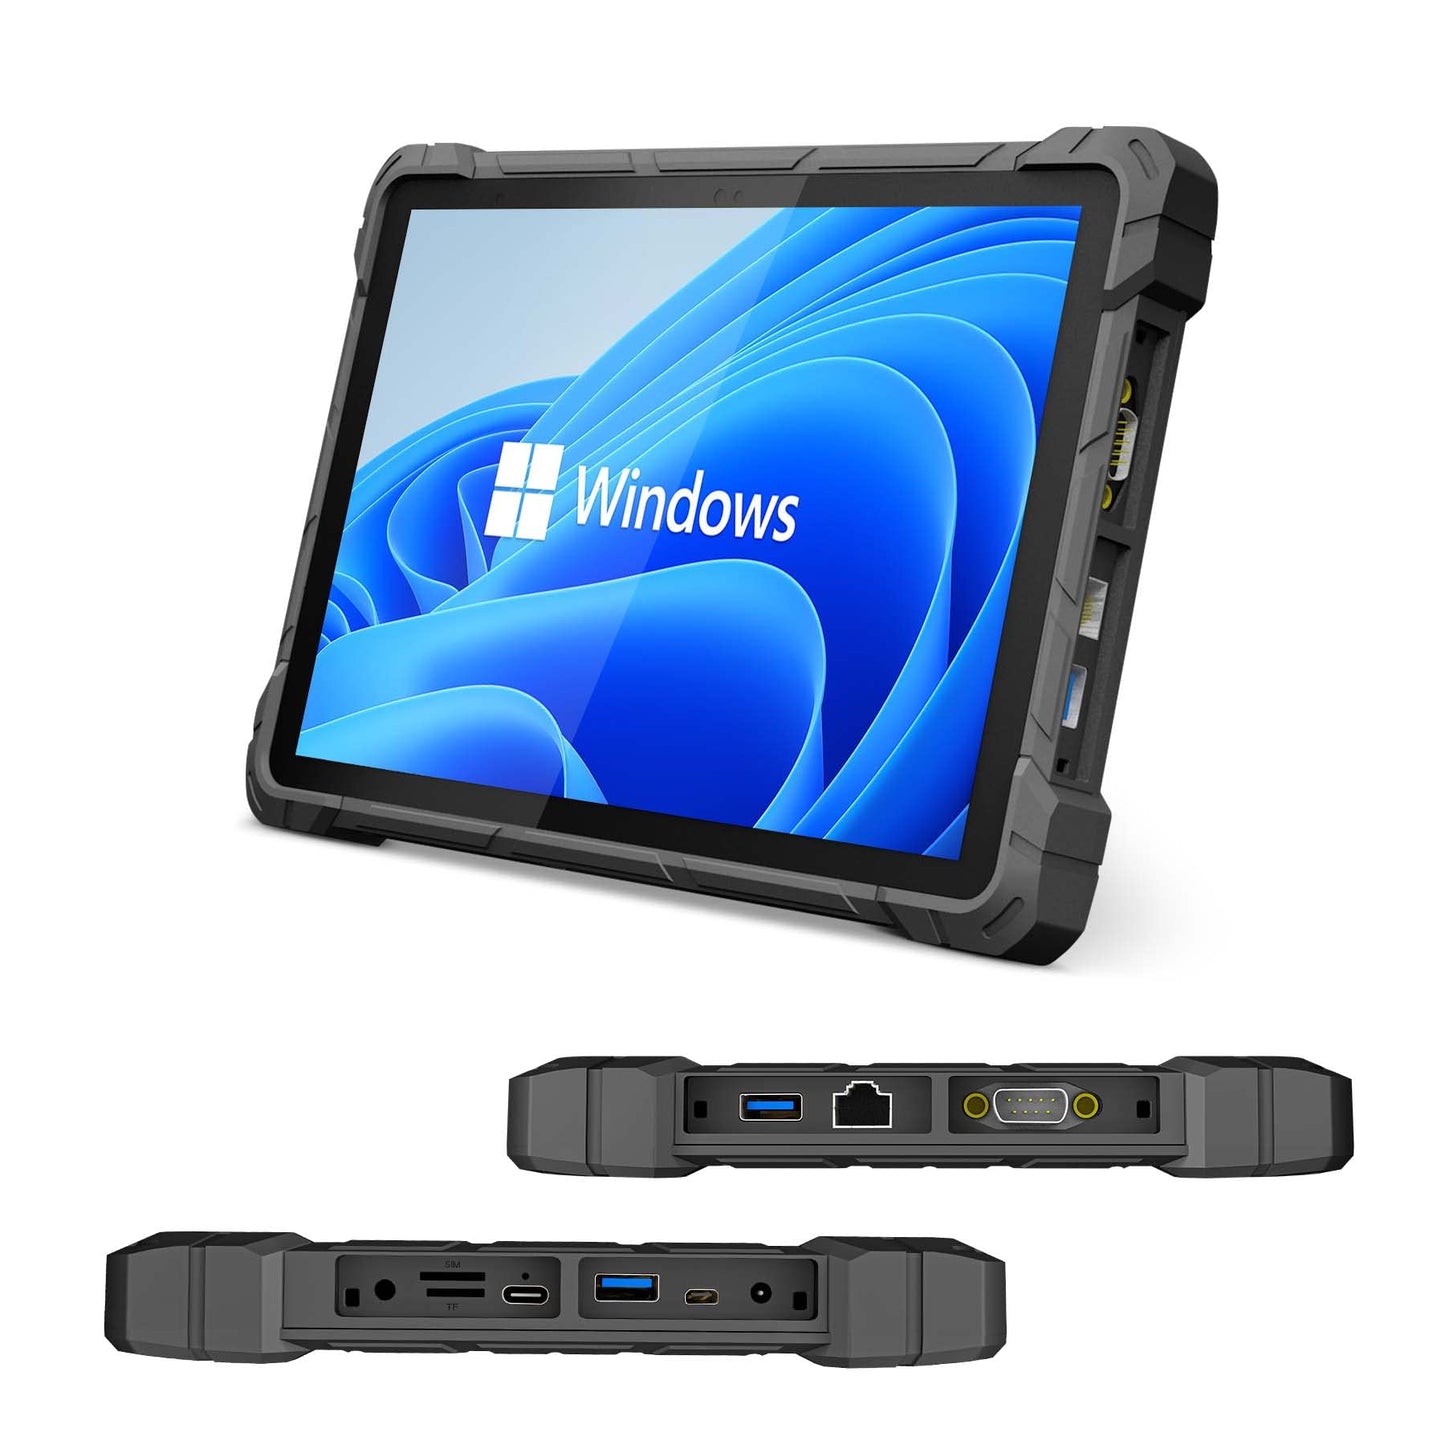 HIGOLEPC - Tableta resistente para Windows 10 Pro de 10.1 pulgadas, 4G LTE, GPS, huellas dactilares, 8 GB RAM/128 GB ROM, batería de 16000 mAh/3.7 V